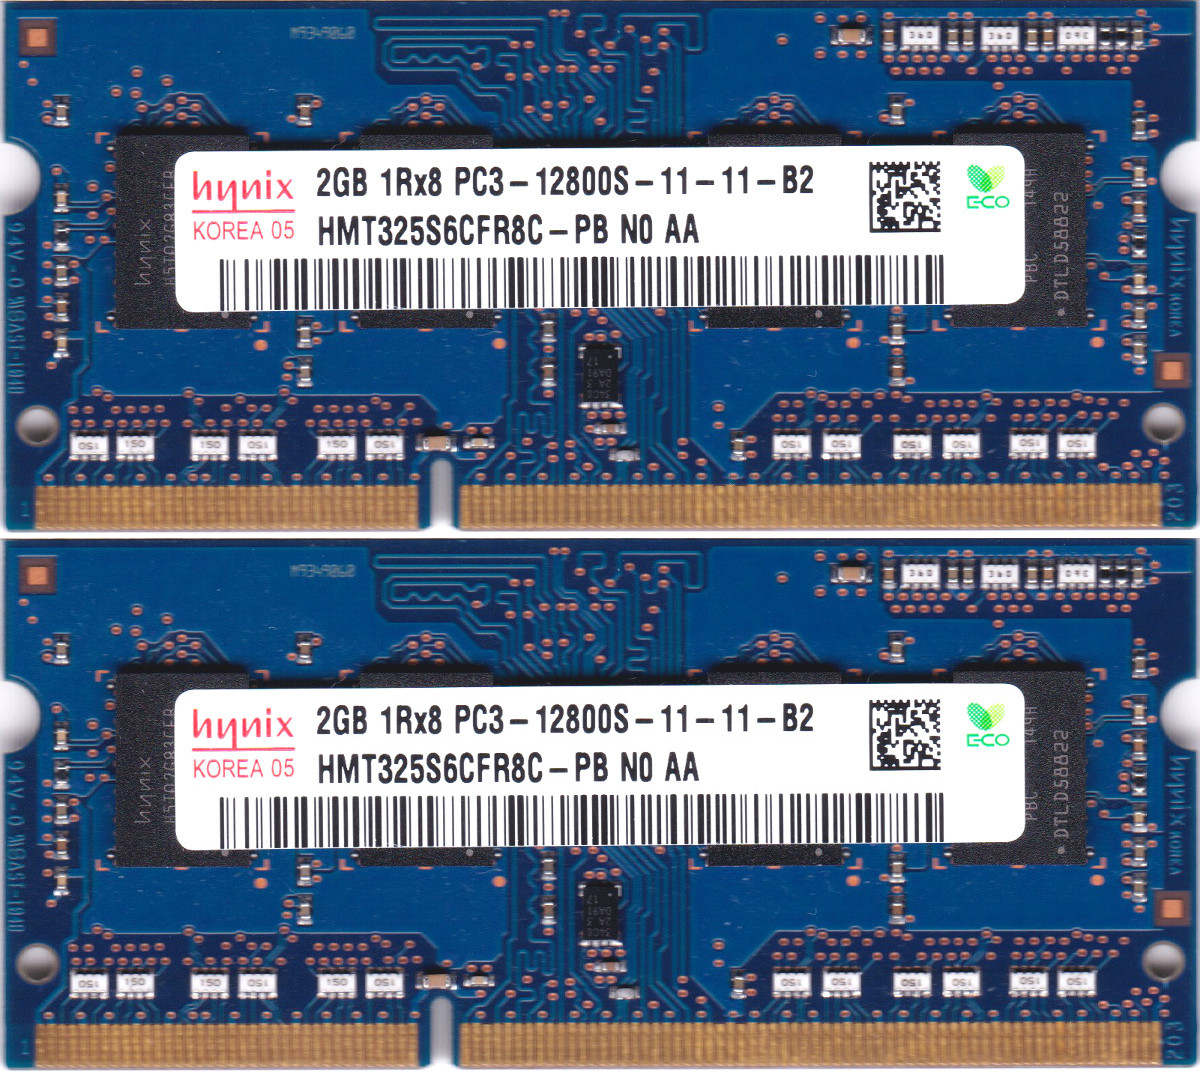 【楽天市場】【ポイント2倍】SK hynix PC3-12800S (DDR3-1600) 2GB x 2枚組み 合計4GB SO-DIMM